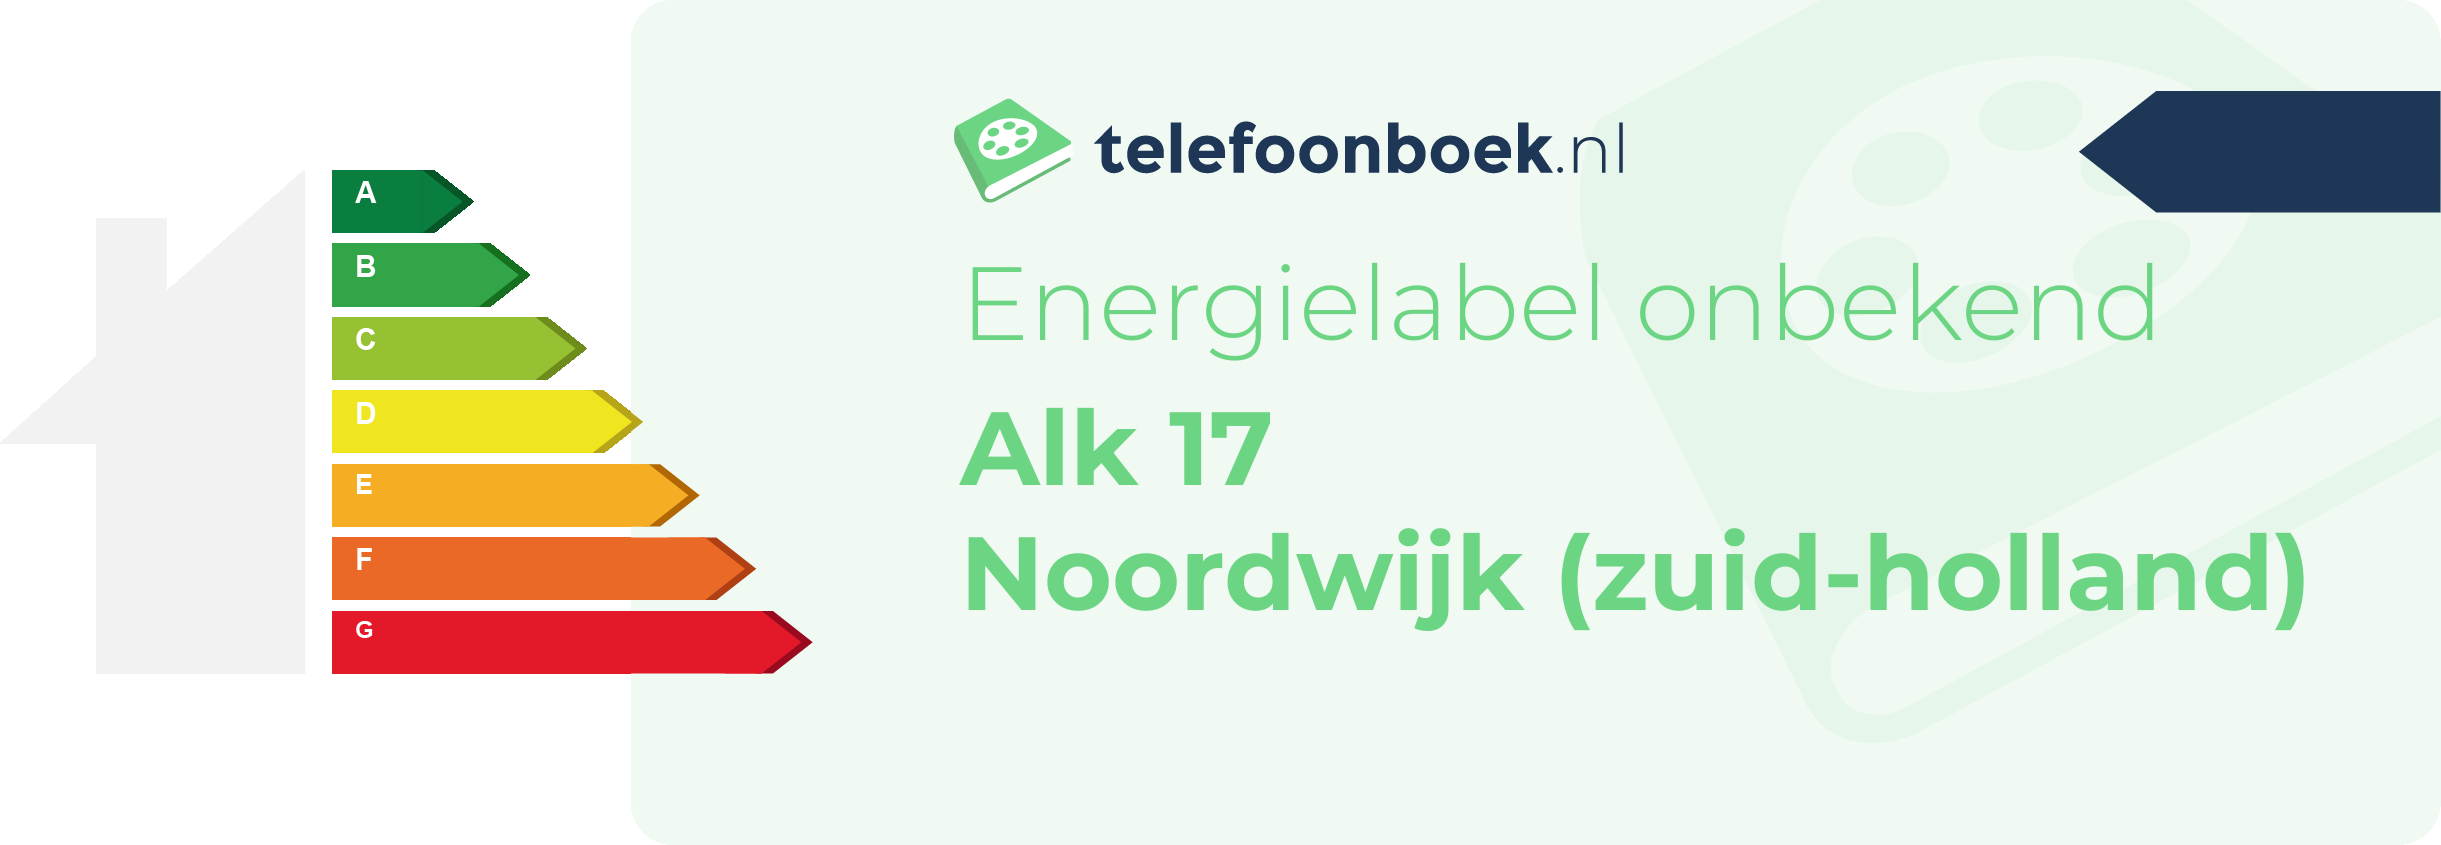 Energielabel Alk 17 Noordwijk (Zuid-Holland)